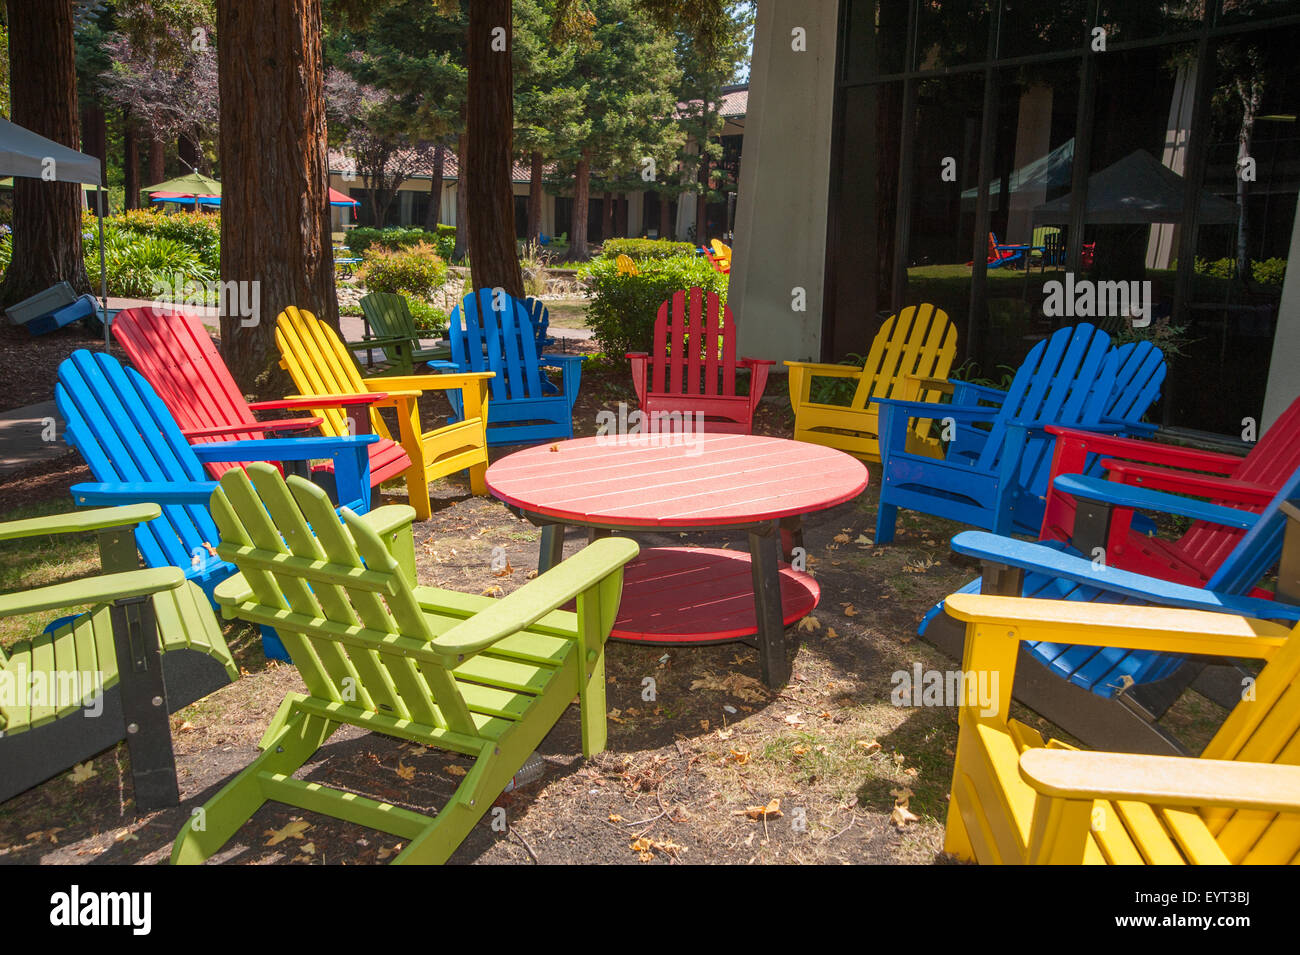 MOUNTAIN VIEW, CALIFORNIE - 1 août 2015 : Picnick salon avec Google siège, également connu sous le nom de Googleplex, à Mountain View, Californie Banque D'Images